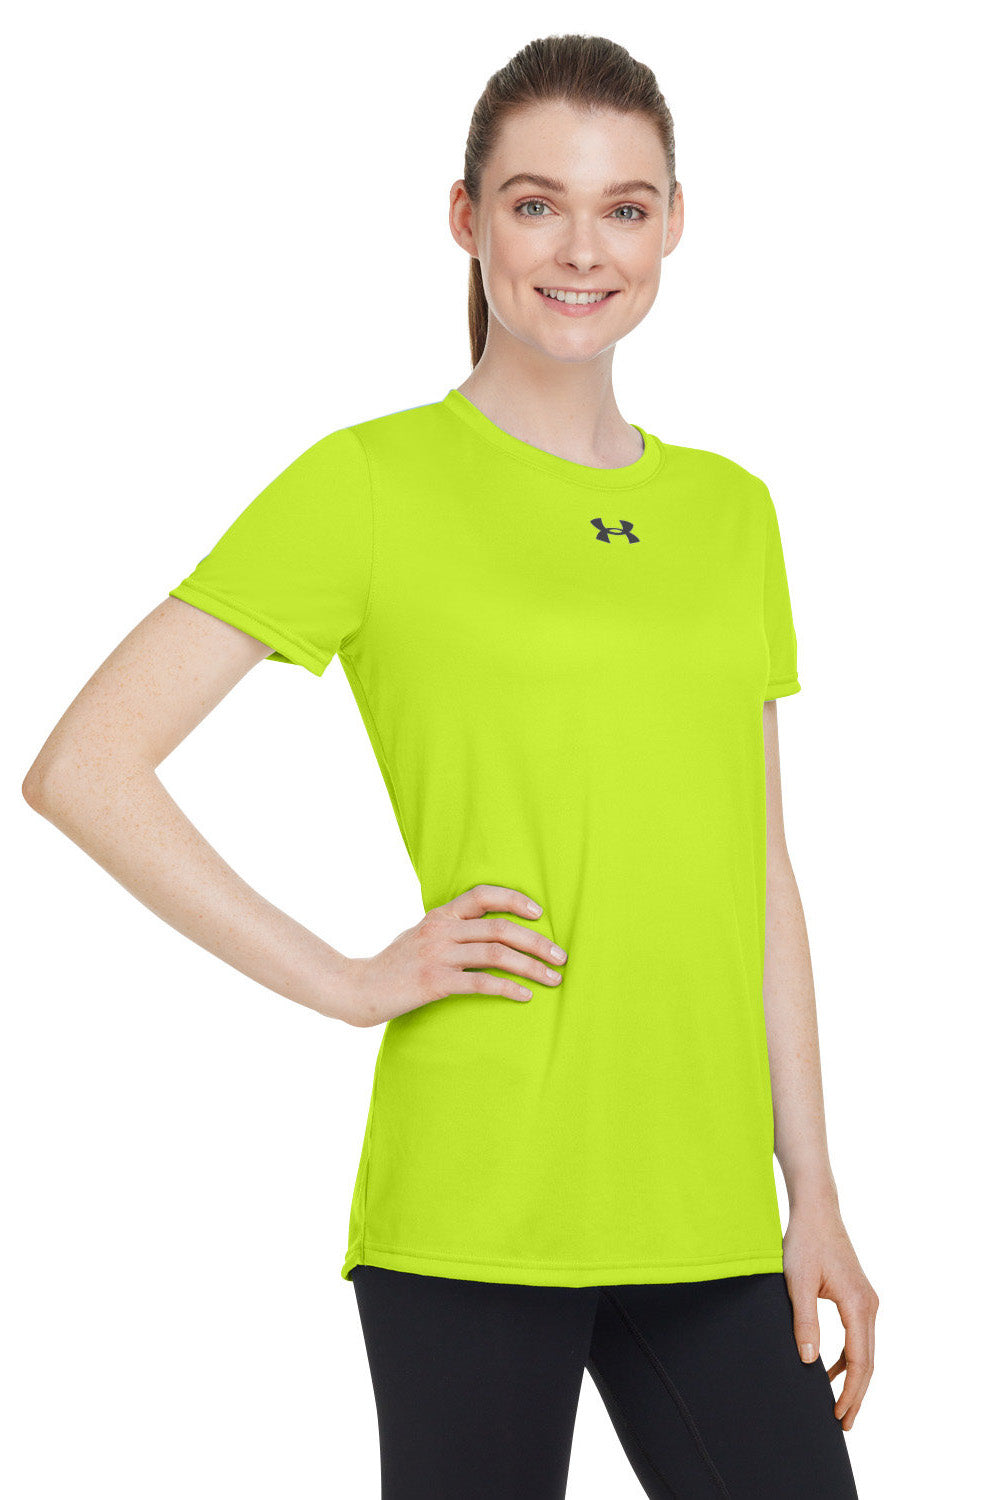 Under Armour 1376847 Womens Team Tech Moisture Wicking Short Sleeve Crewneck T-Shirt Hi Vis Yellow Model 3Q